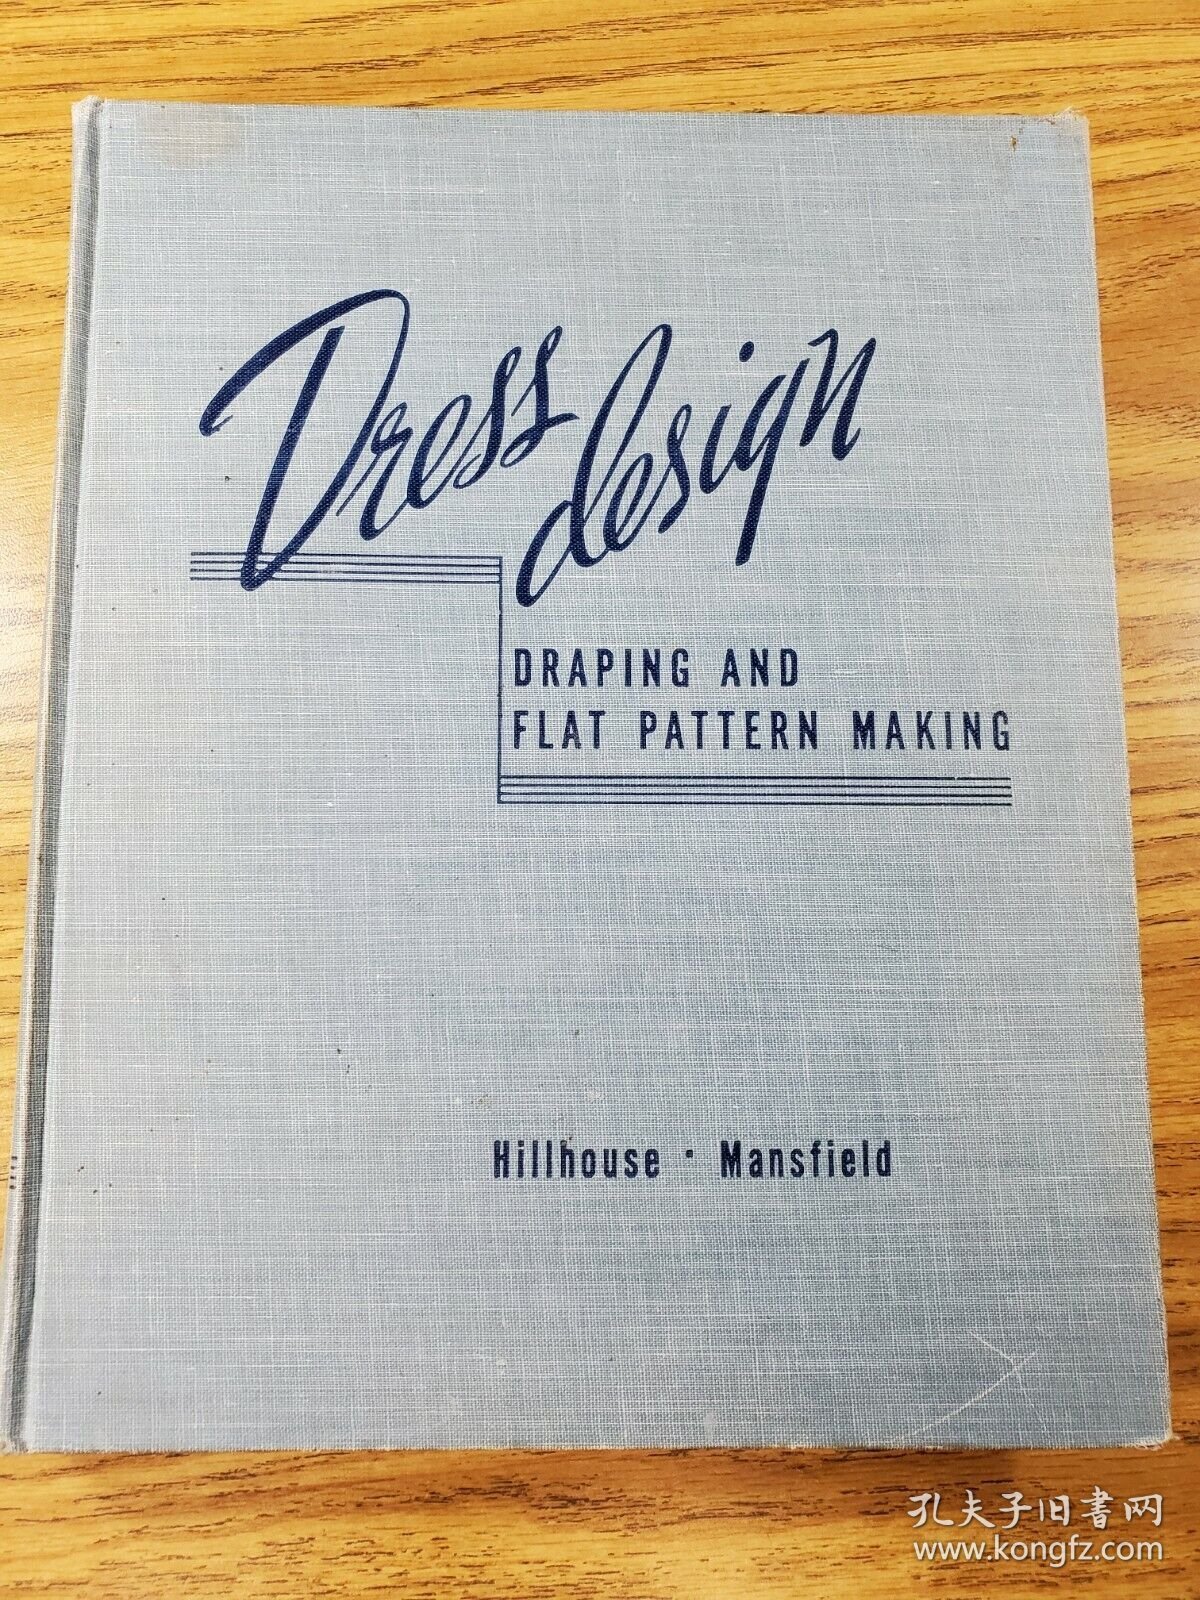 稀缺《时装设计,悬垂平纹制作》大量图录， 约1948年出版